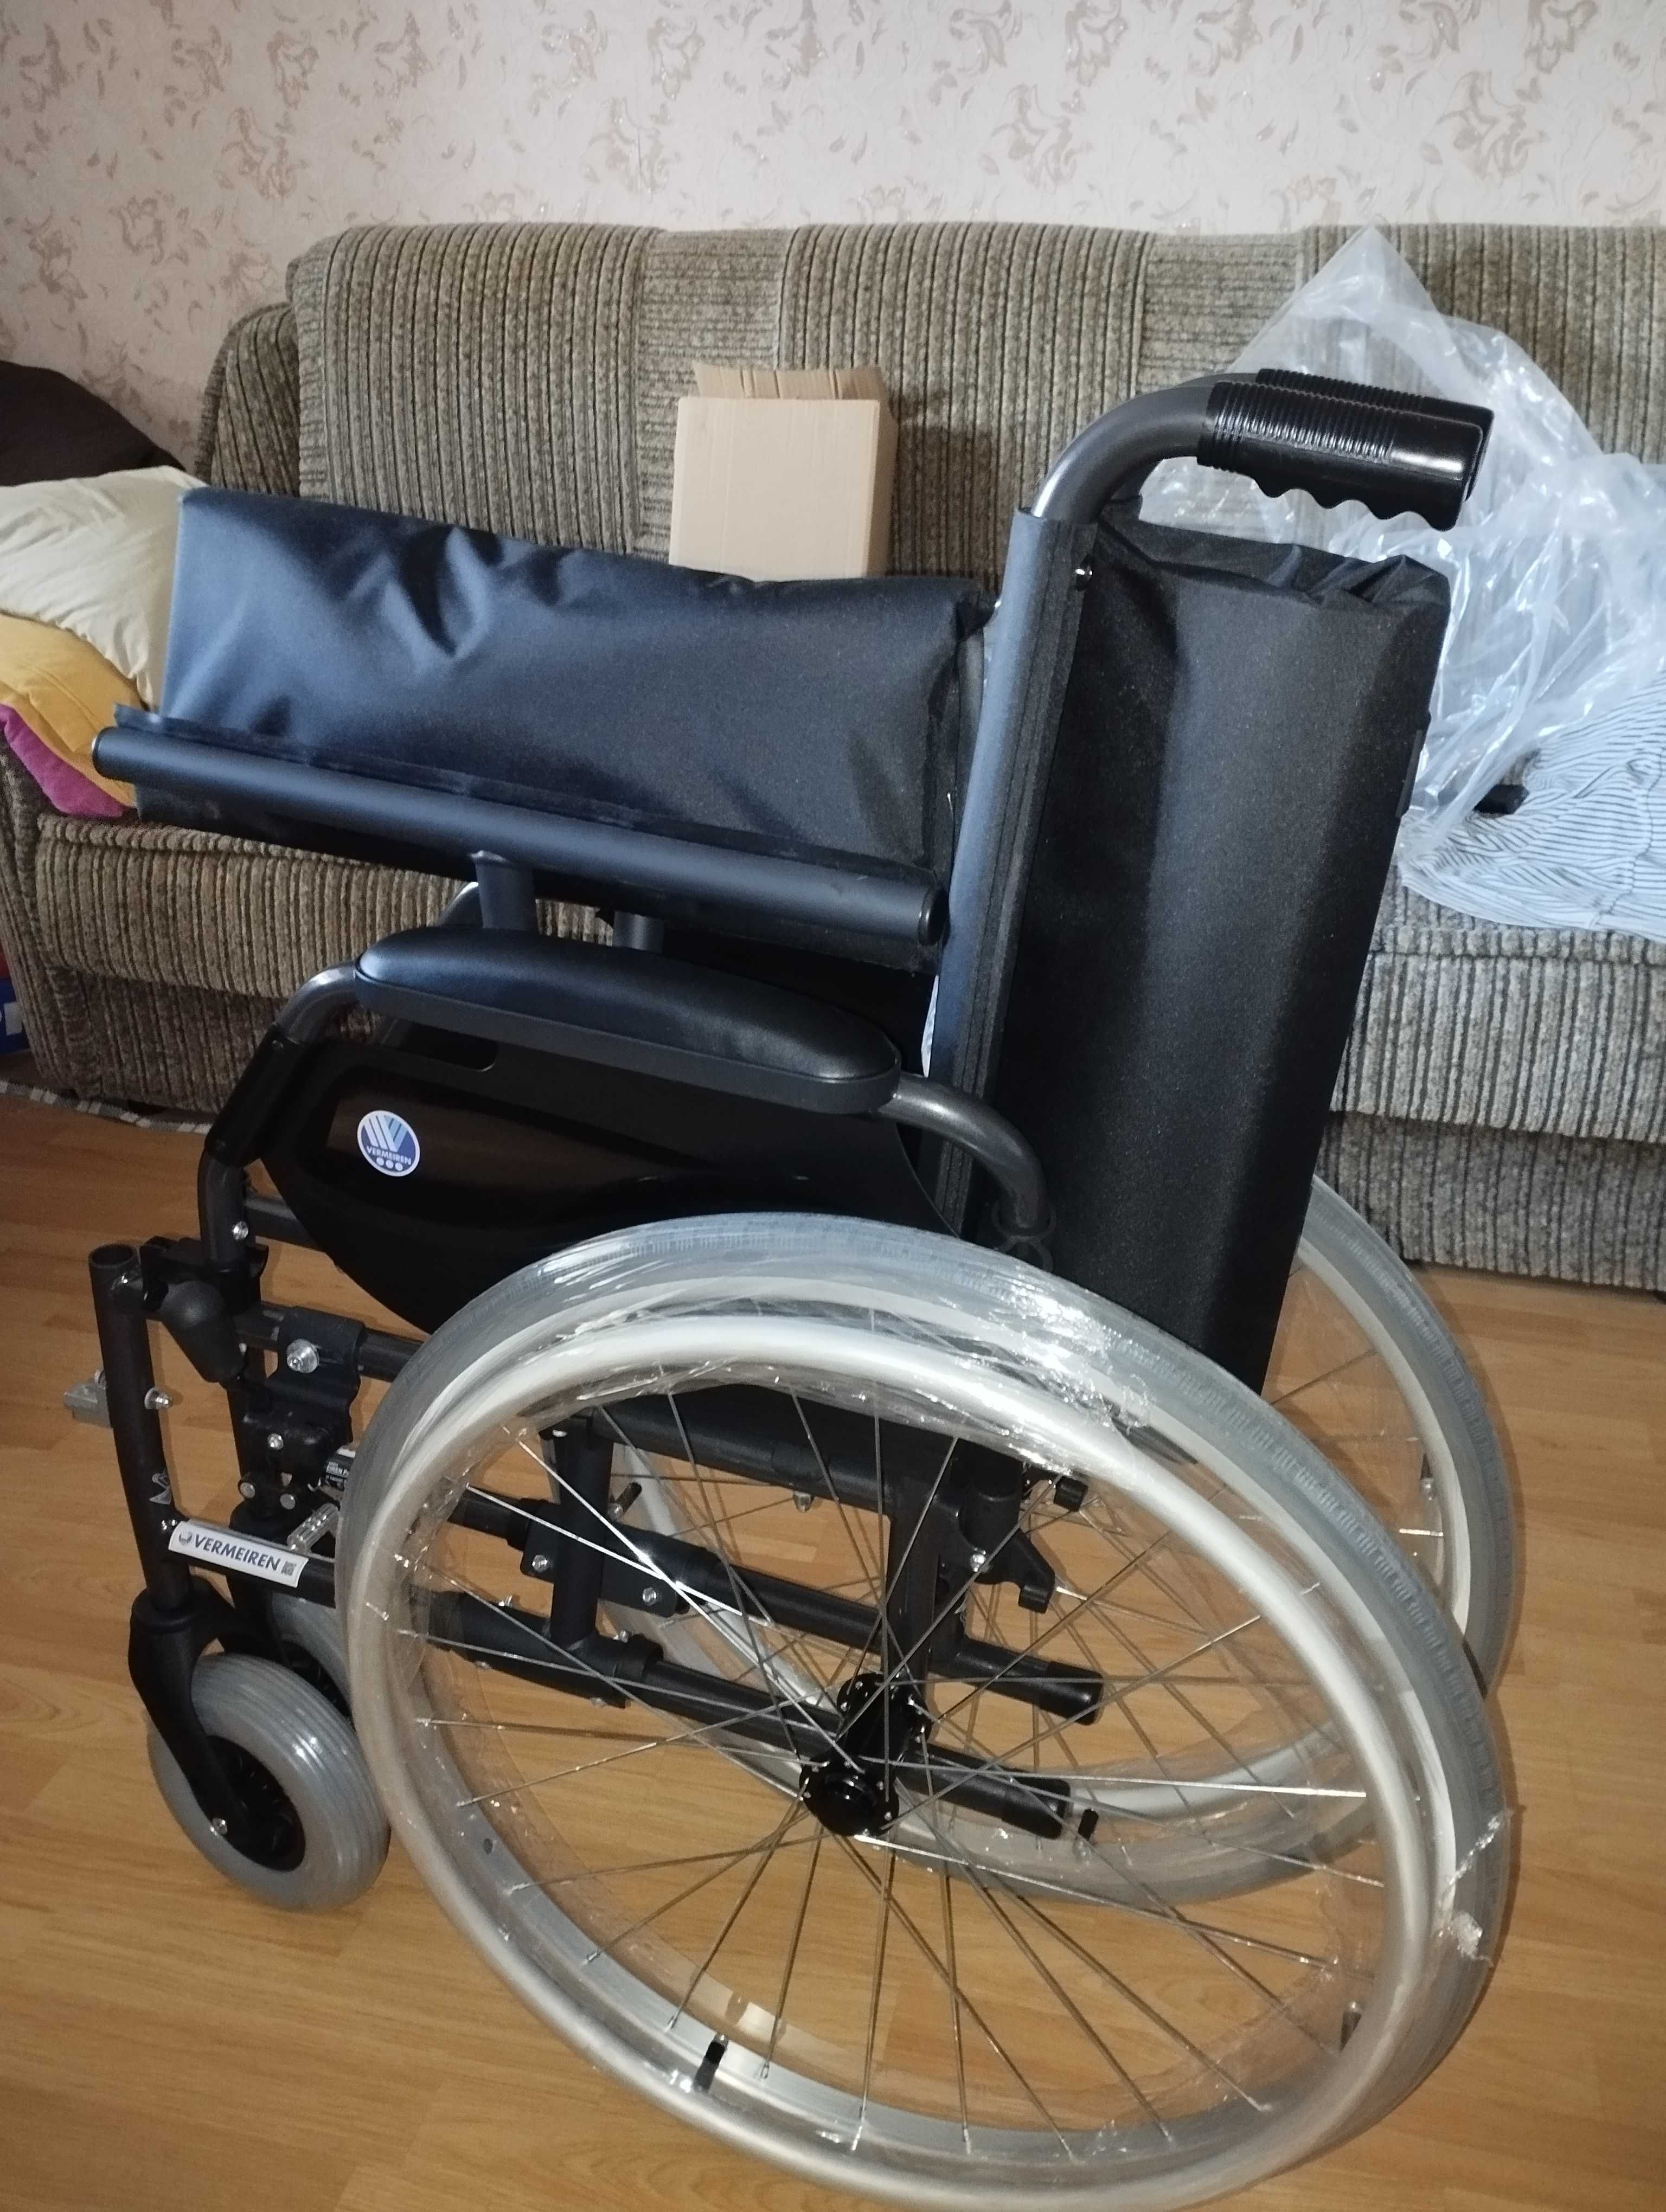 Продам новую инвалидную коляску Vermeiren, в упаковке